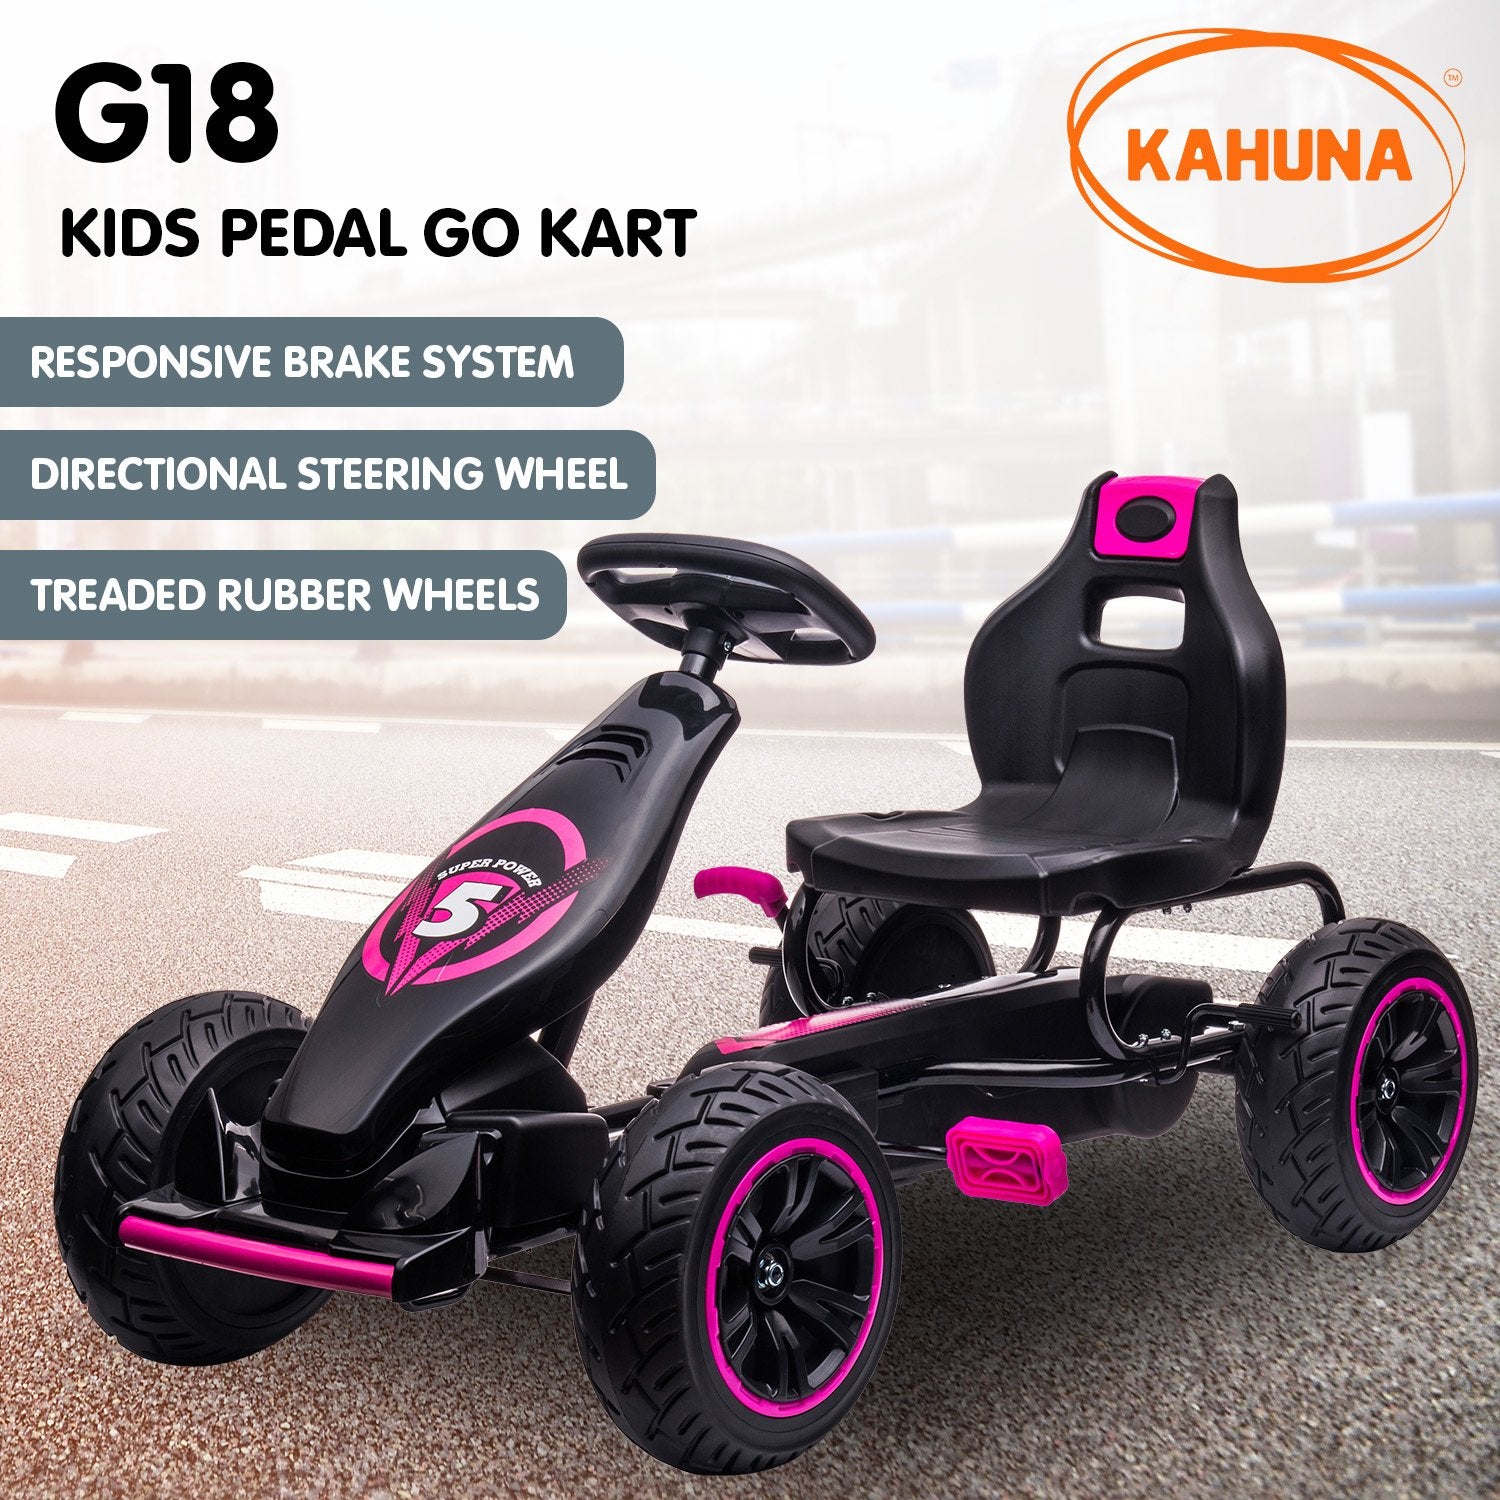 Kahuna G18 Kids Ride On Pedal Go Kart - Rose Pink